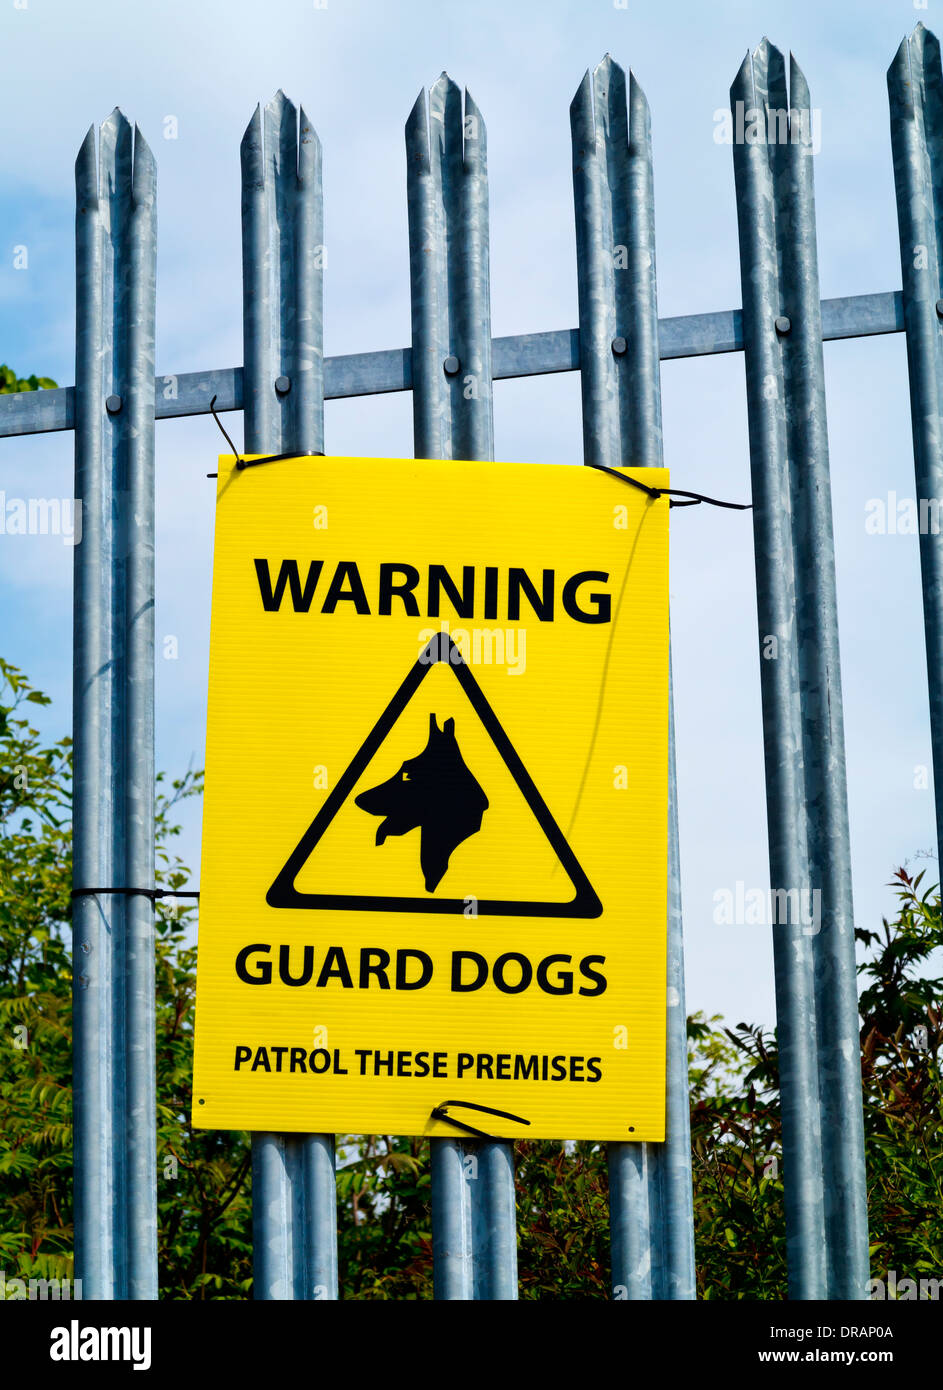 Warnung-Wachhunde patrouillieren diese Räumlichkeiten Zeichen an ein Metall Sicherheitszaun angebracht Stockfoto